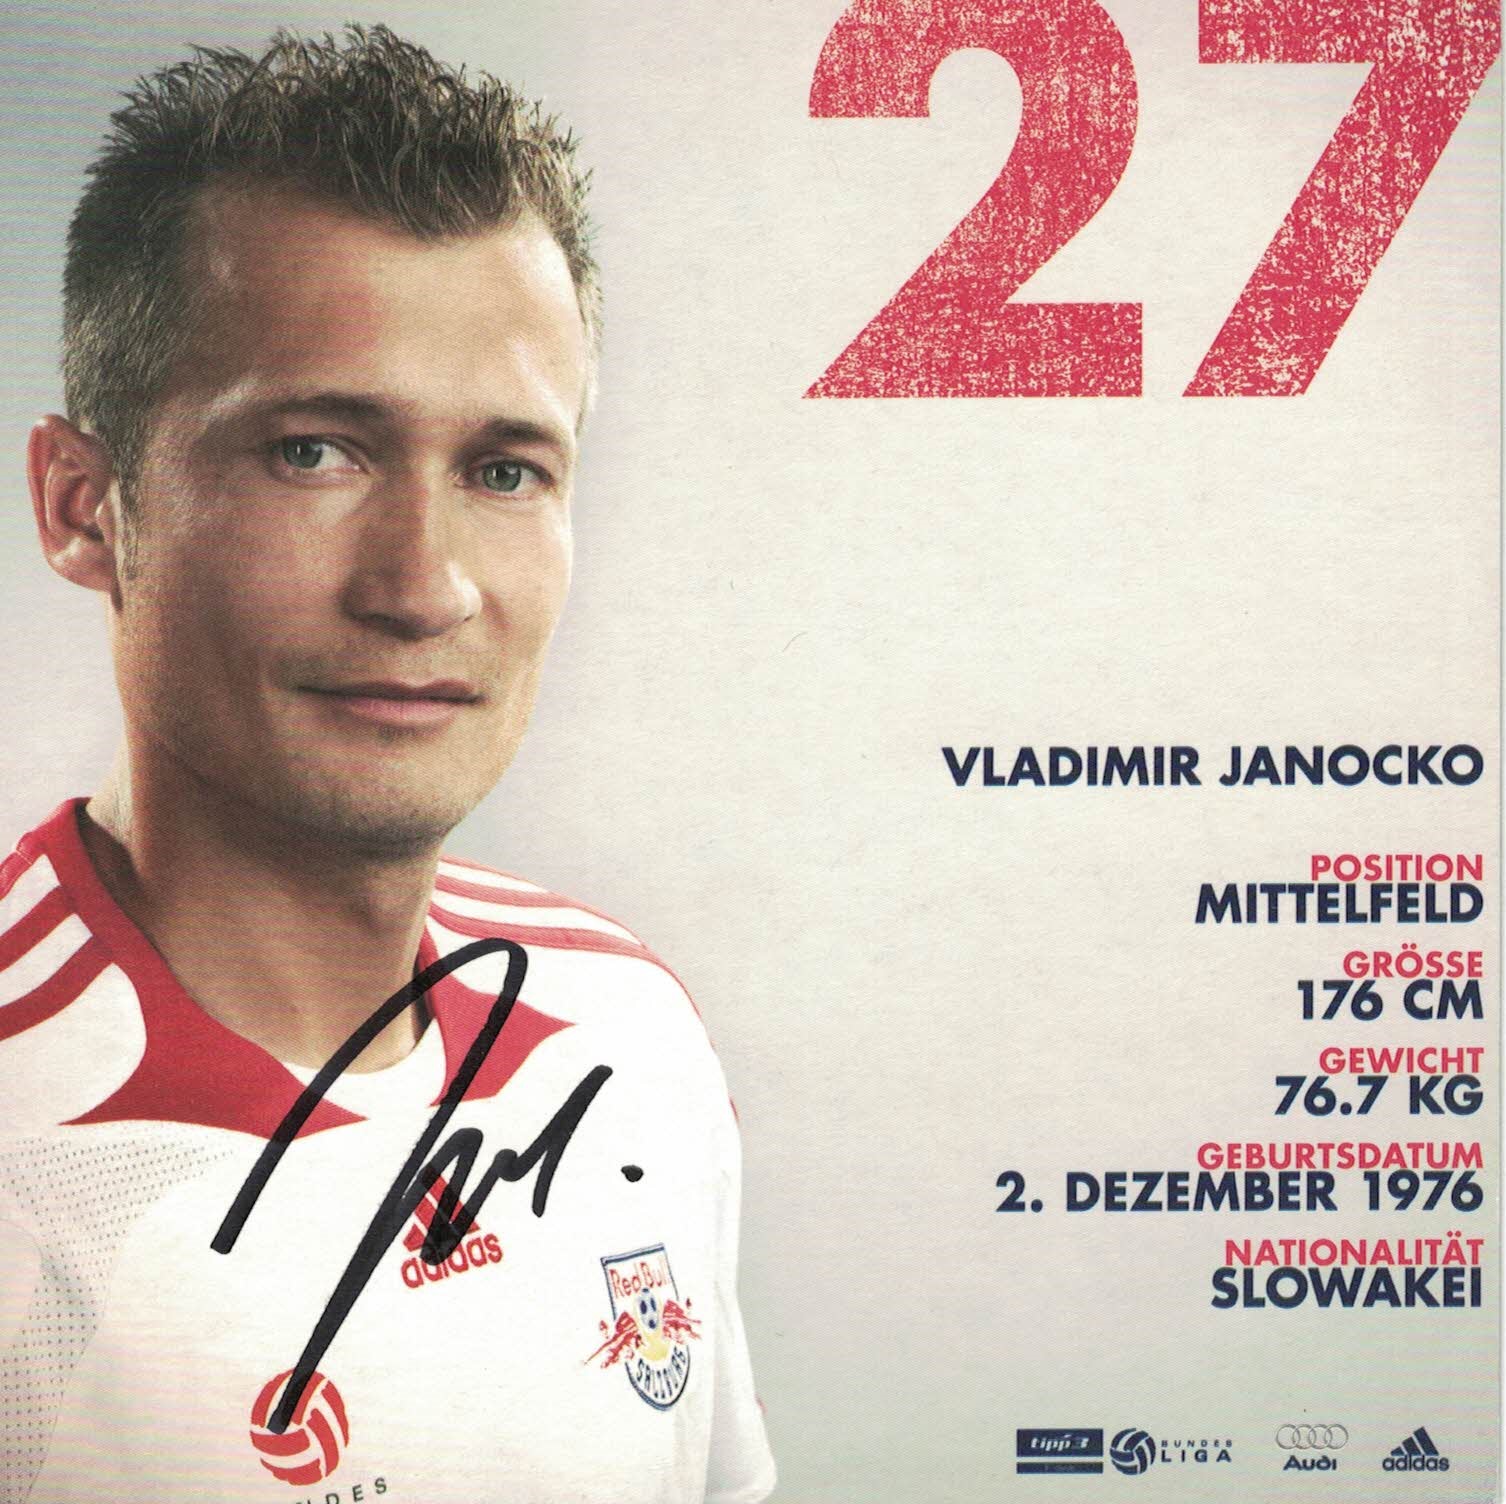 Vladimir Janocko Red Bull Salzburg 2009/10 Podpisova karta autogram